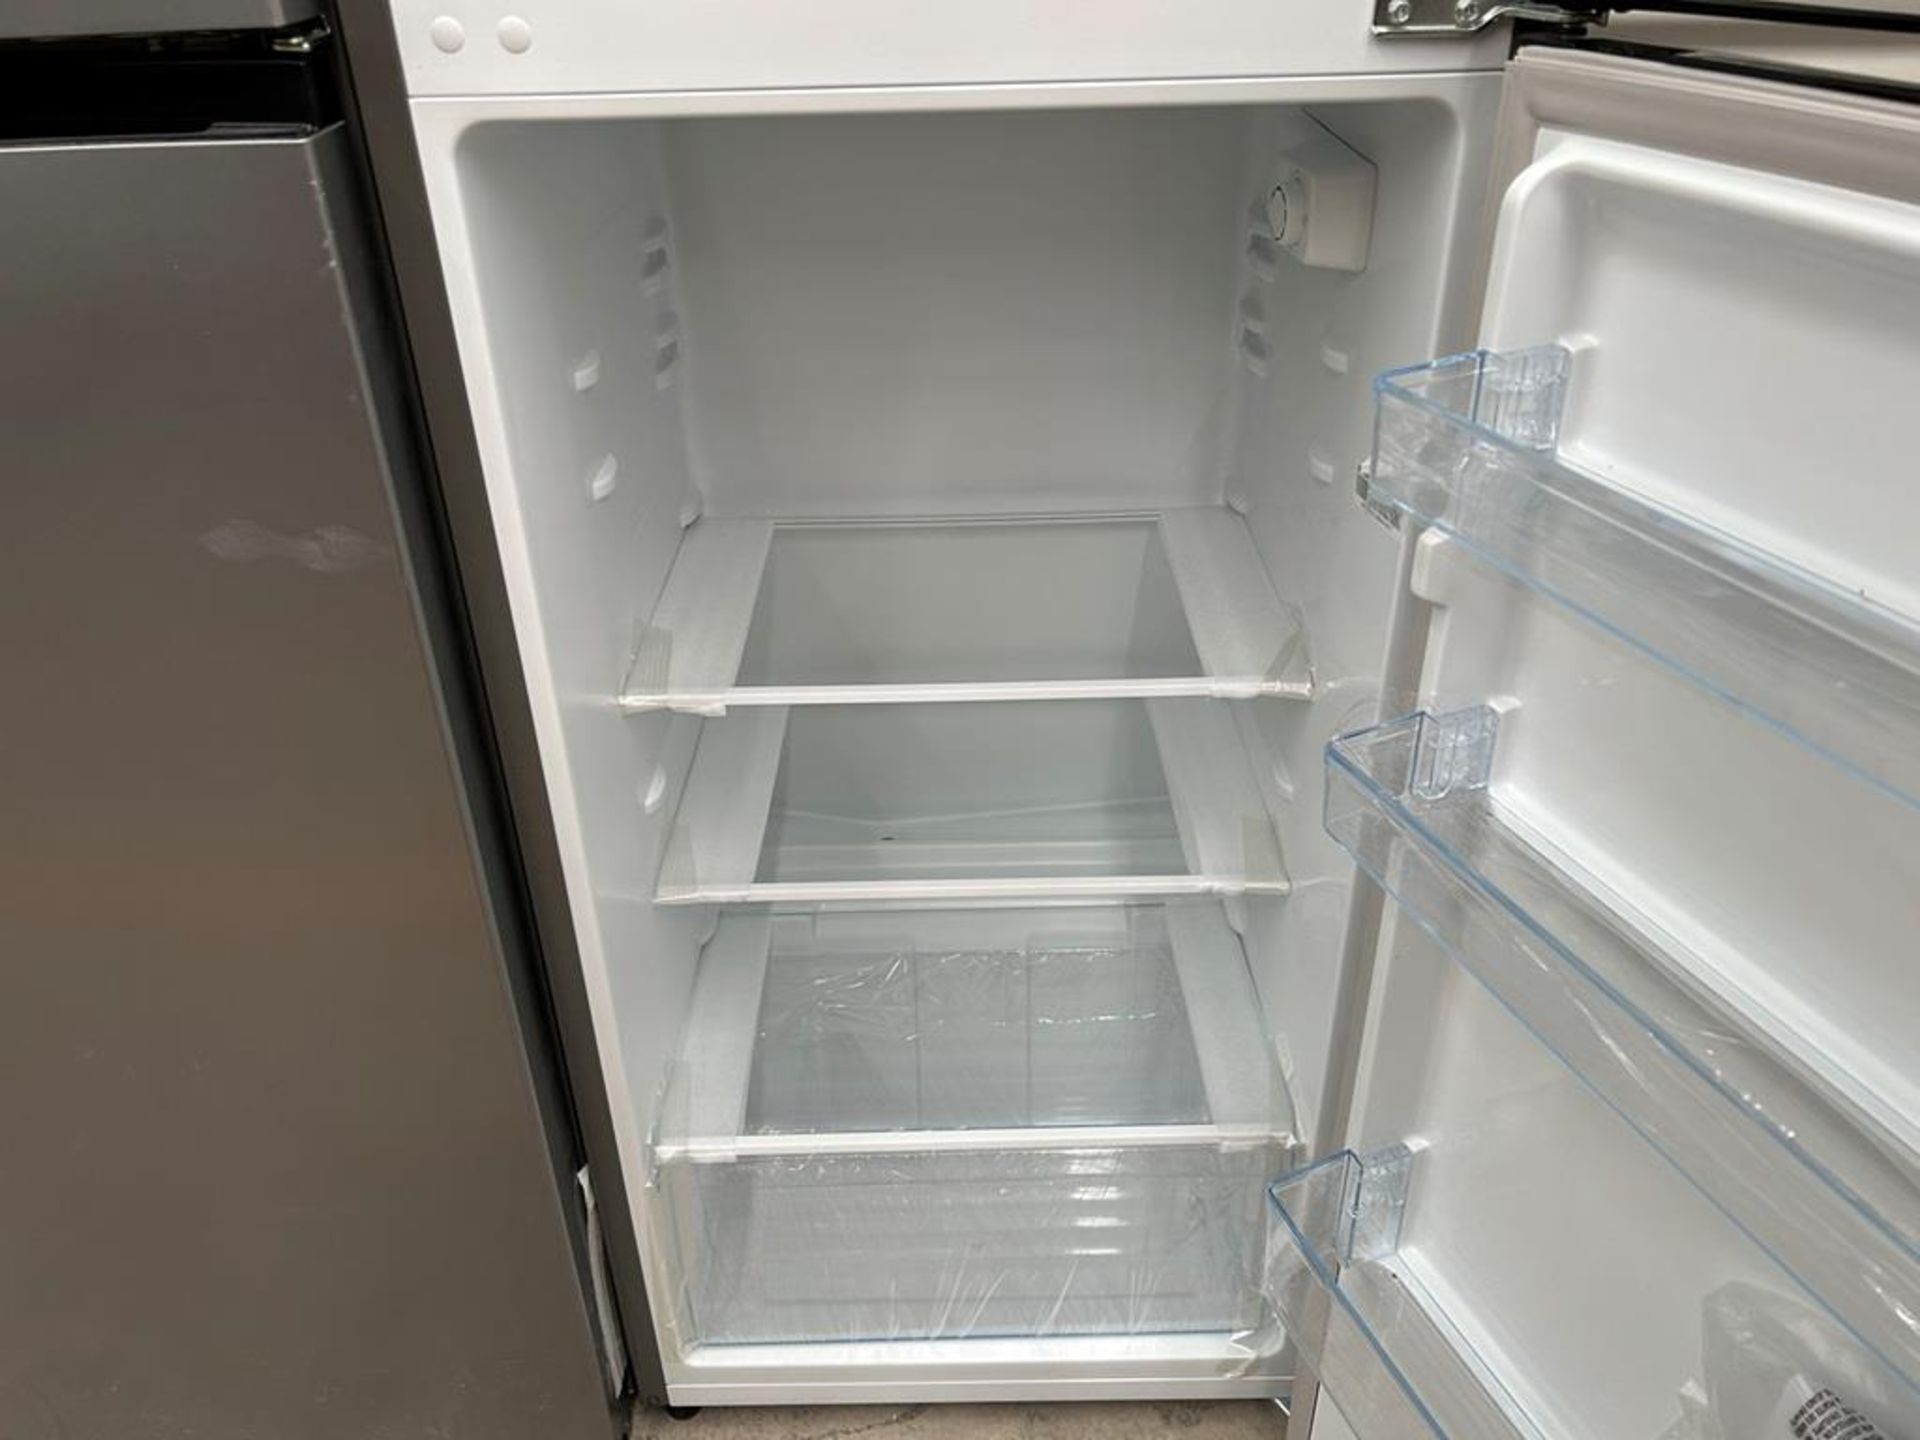 Lote de 2 refrigeradores contiene: 1 Refrigerador Marca HISENSE, Modelo RT80D6AGX, Color GRIS; 1 Re - Image 5 of 10